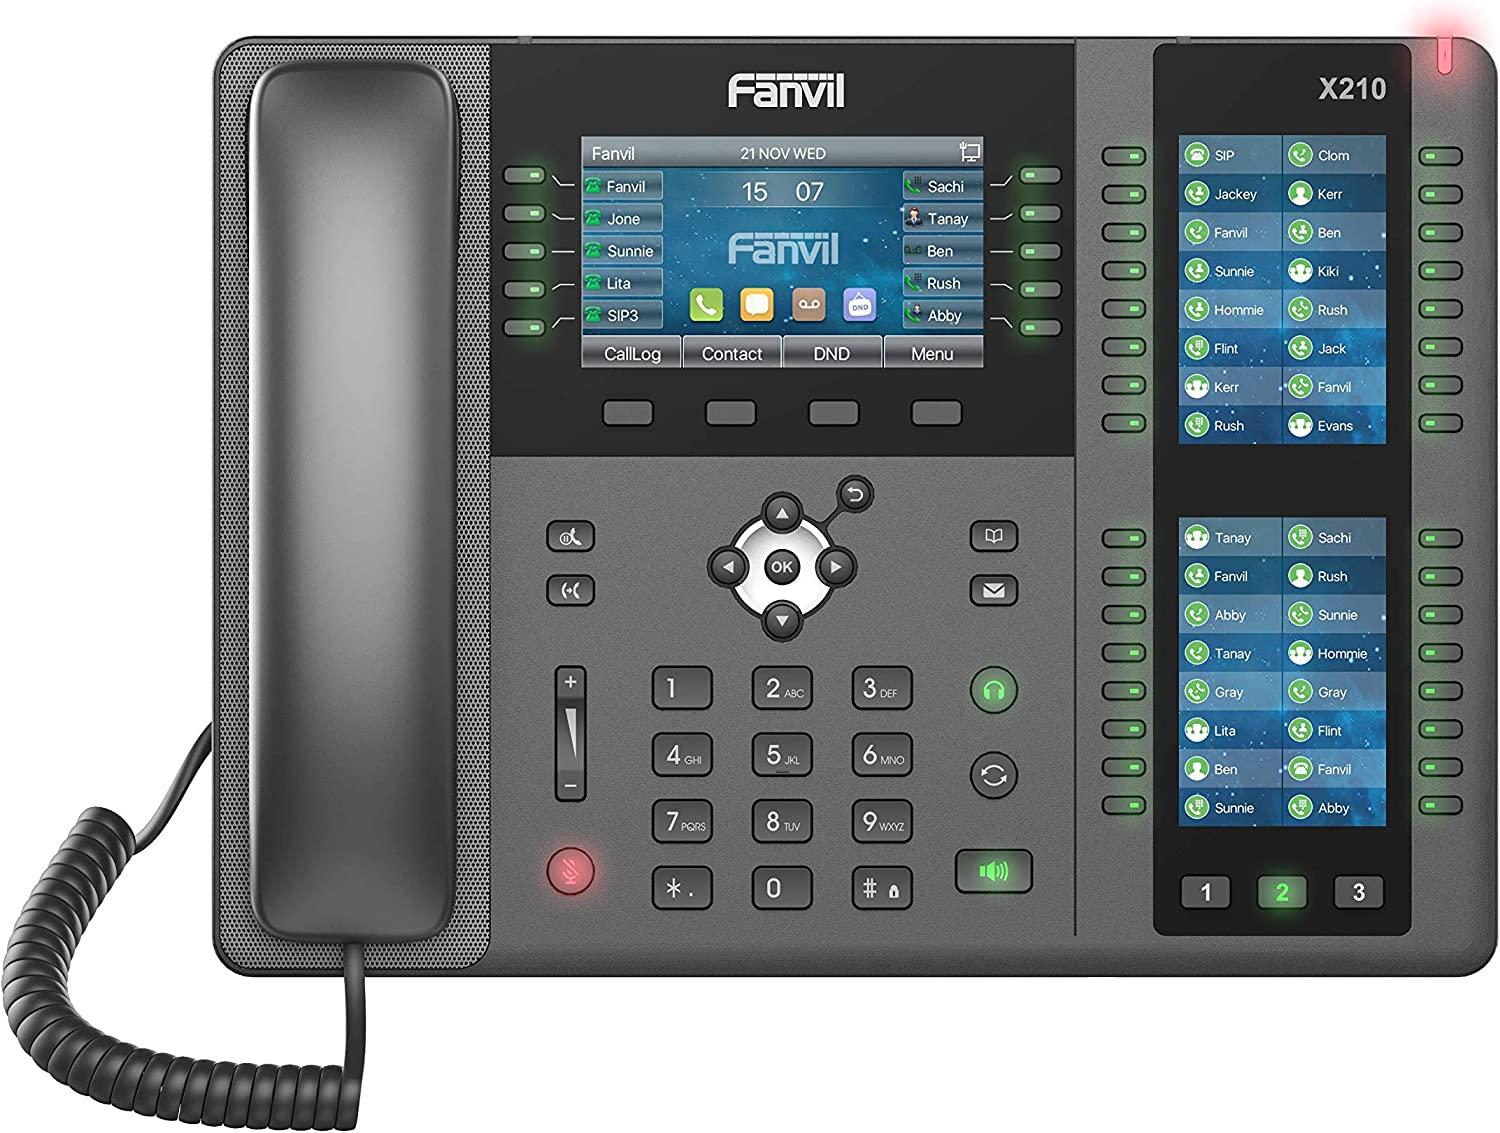 FANVIL Fiksni telefon VoIP X210 crni